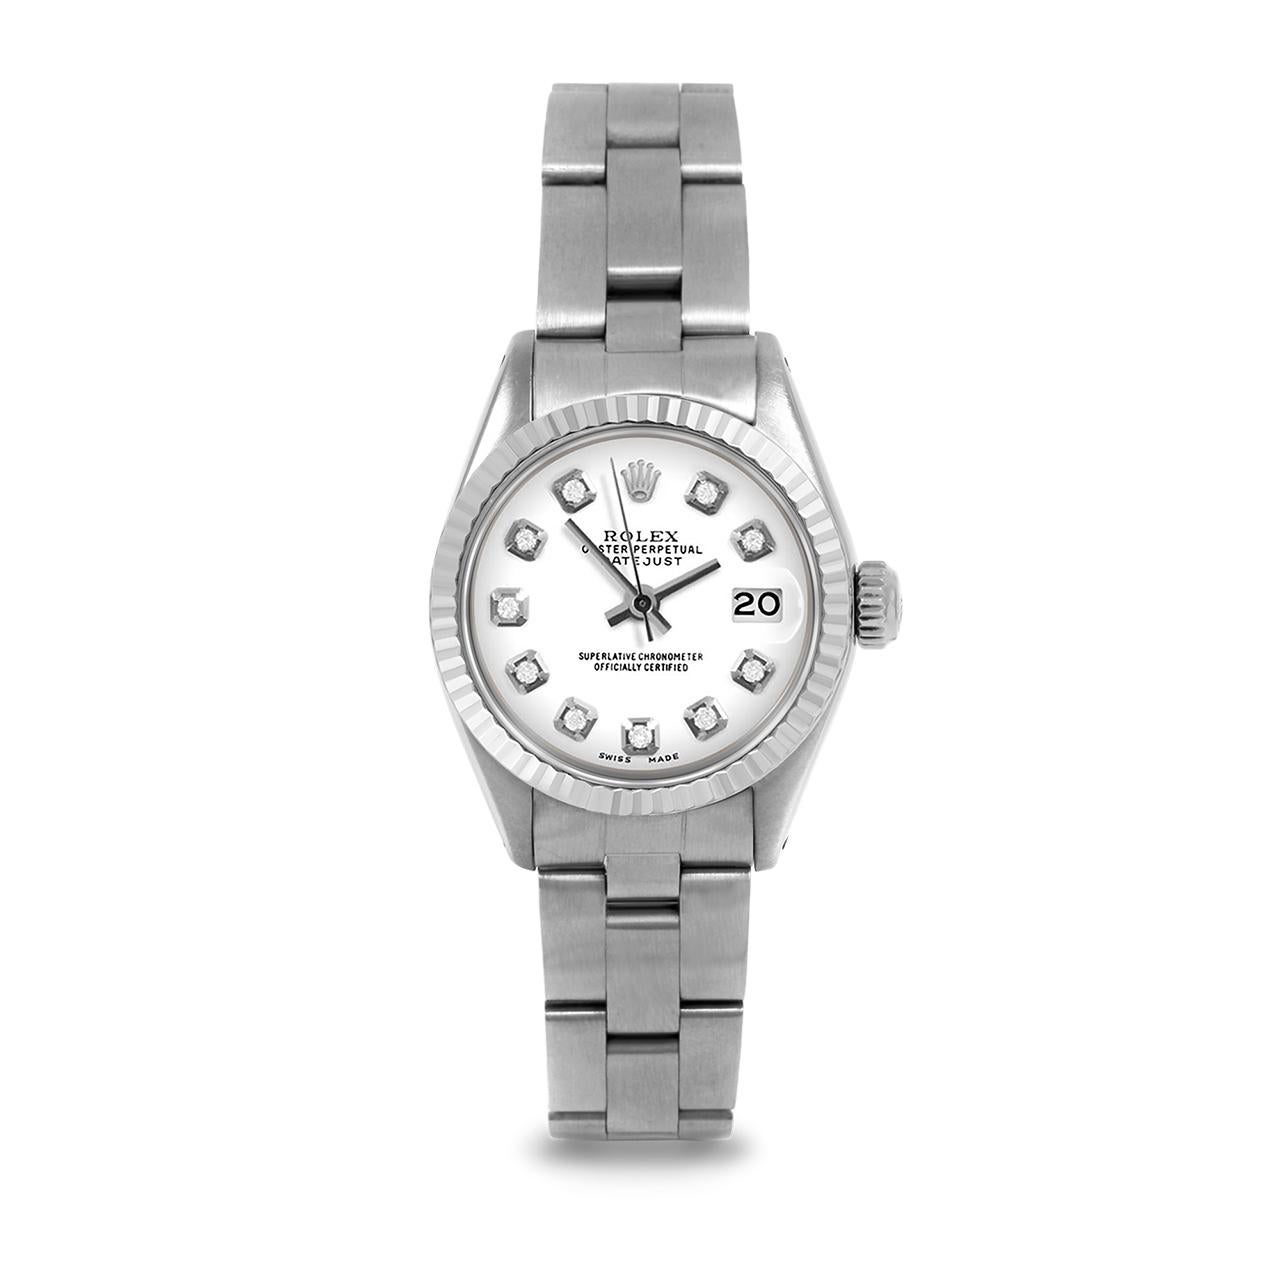 Montre Rolex 6917 Ladies 26mm Datejust d'occasion, cadran personnalisé en diamants blancs et lunette cannelée sur bracelet Rolex Oyster en acier inoxydable.   

SKU 6917-SS-WHT-DIA-AM-FLT-OYS


Marque/Modèle :        Rolex Datejust
Numéro de modèle